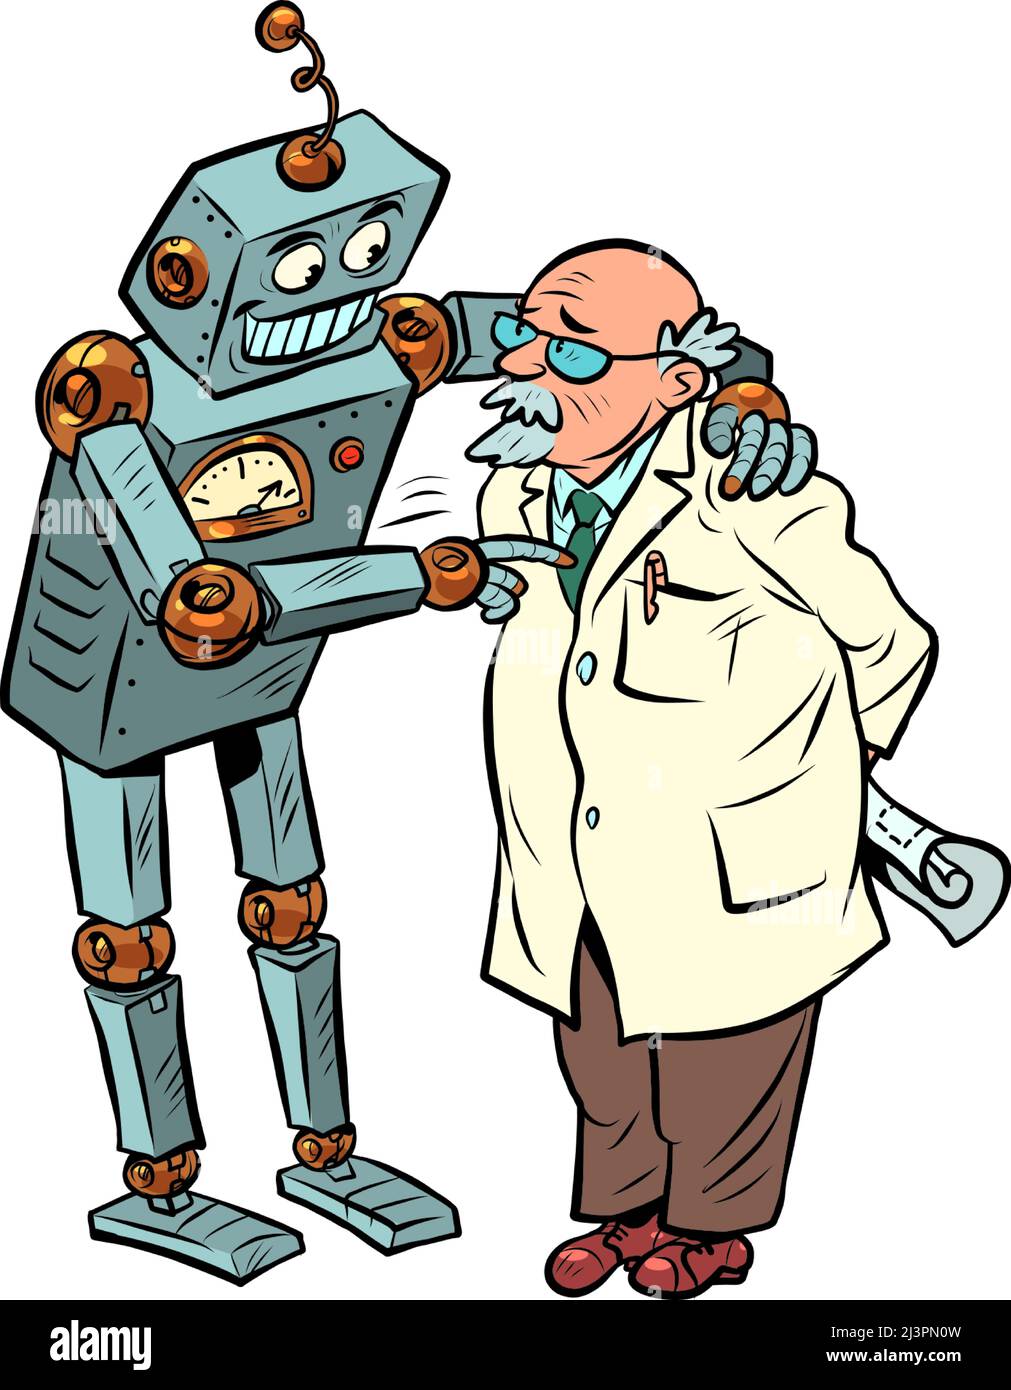 Le robot parle au professeur, à l'intelligence artificielle et à l'esprit humain. Deux amis Illustration de Vecteur